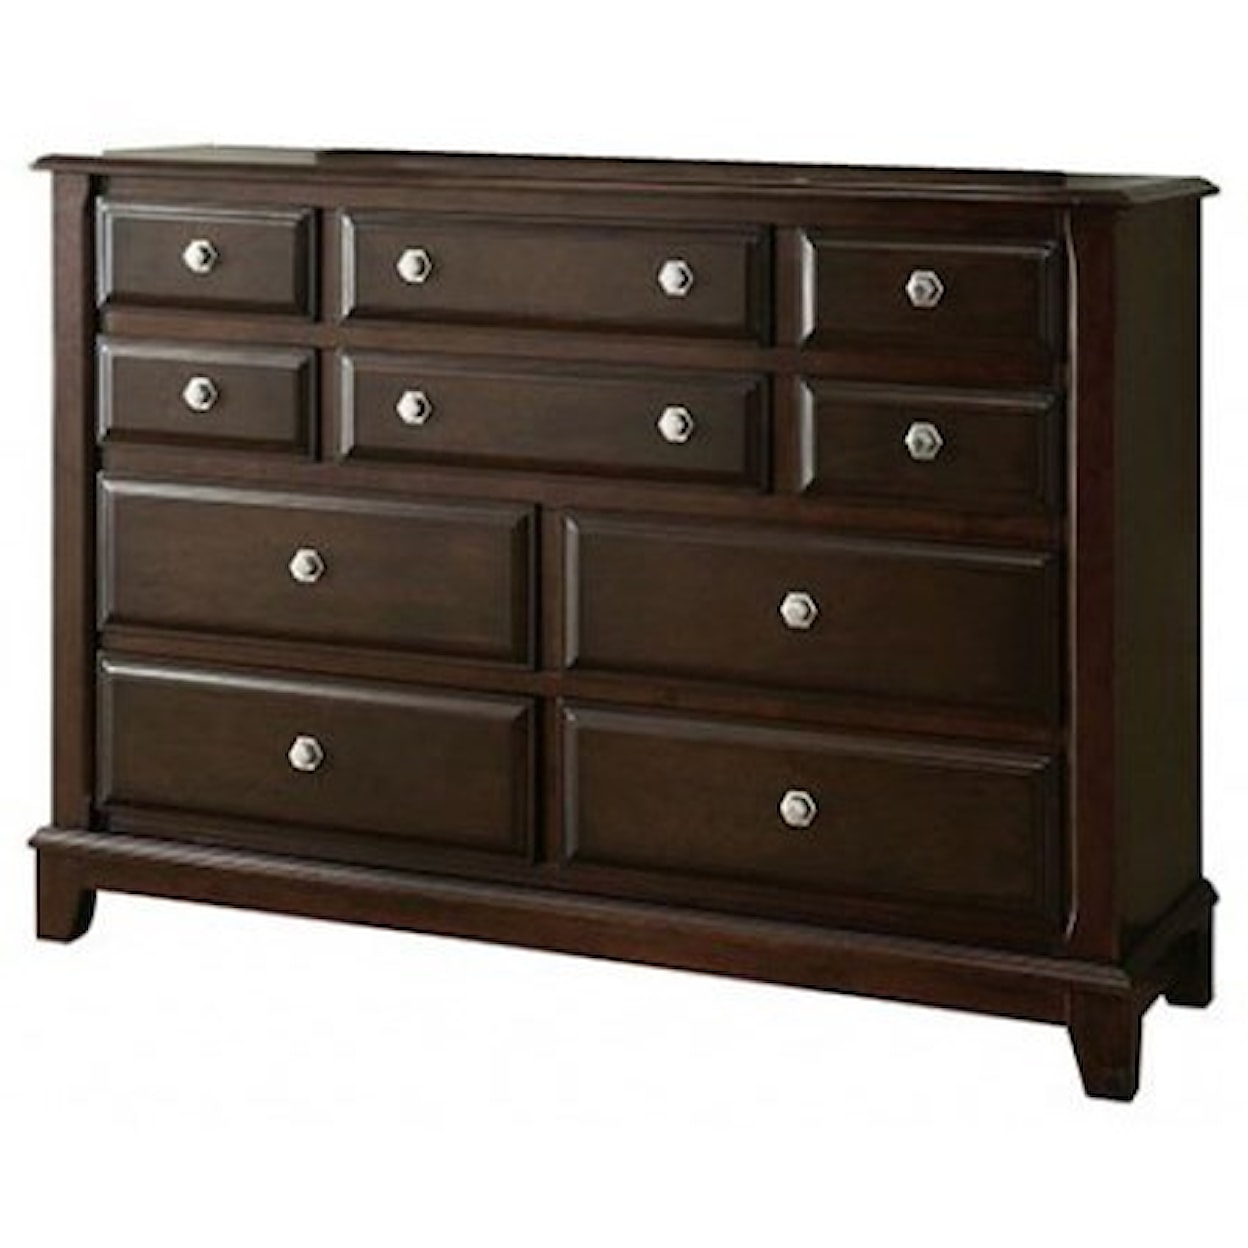 Furniture of America - FOA Litchville Dresser